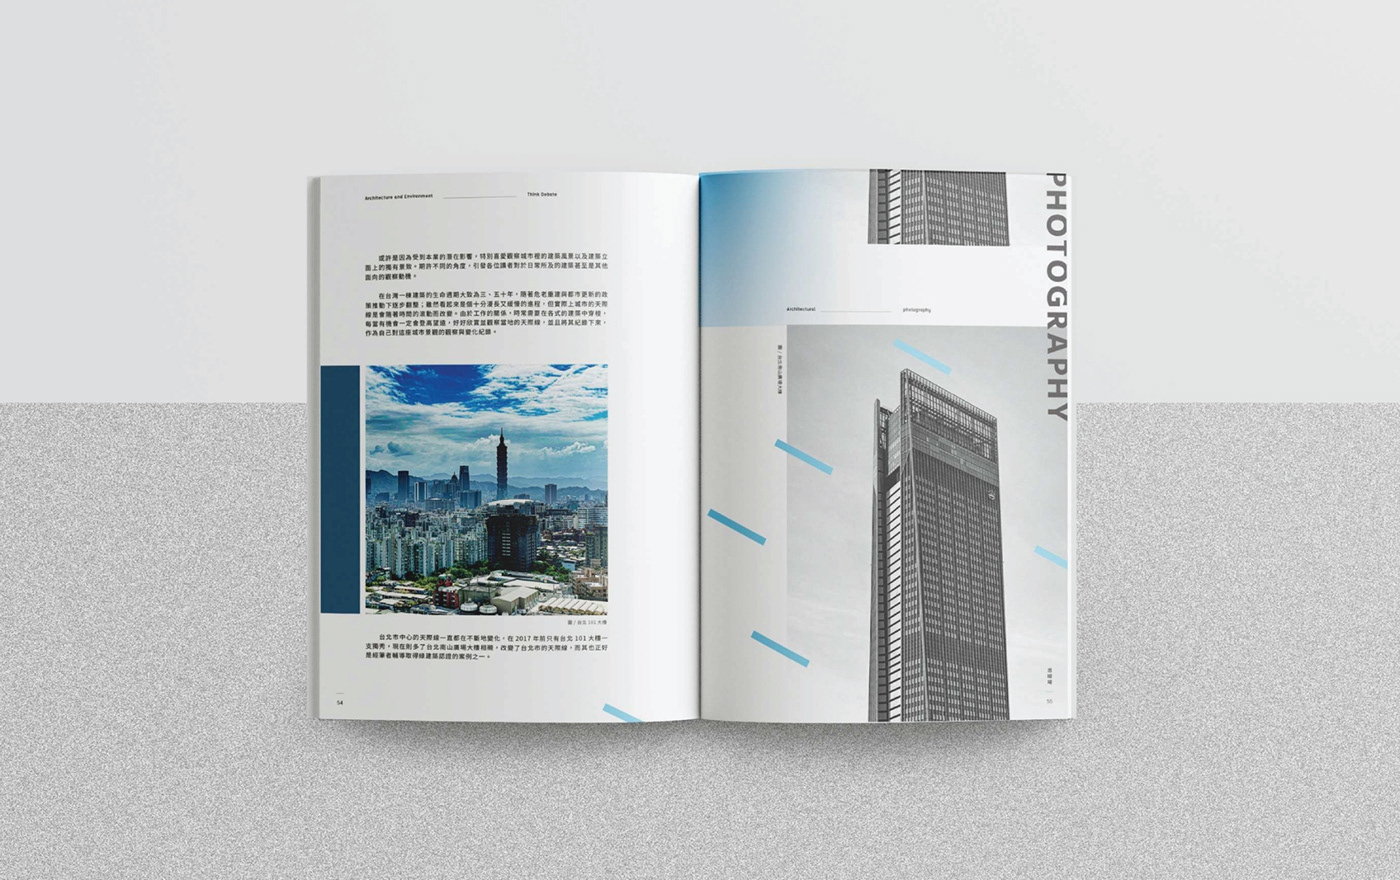 建筑与环境杂志版式编排设计